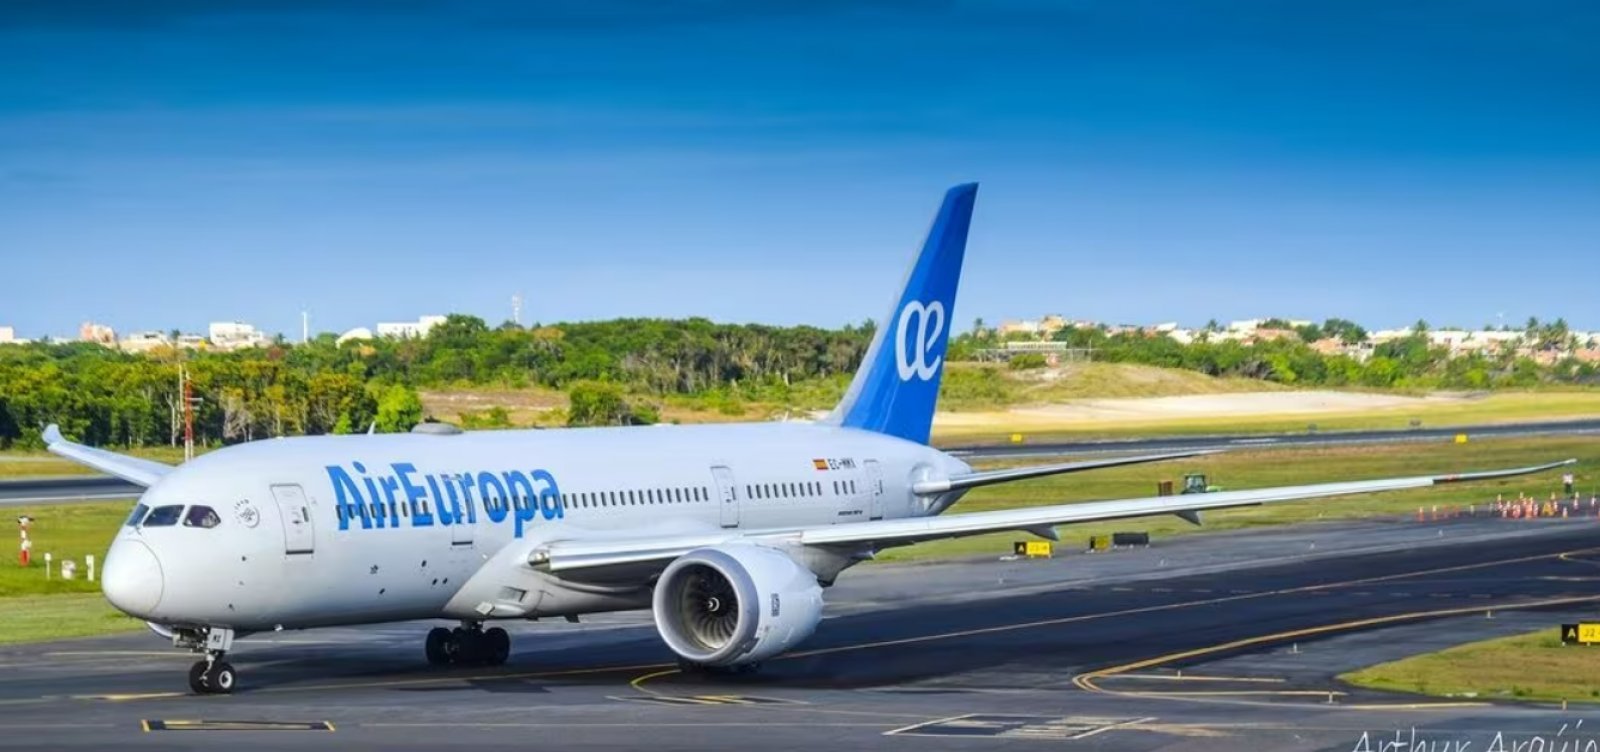 Salvador Bahia Airport anuncia terceira frequência de voos entre Salvador e Madrid